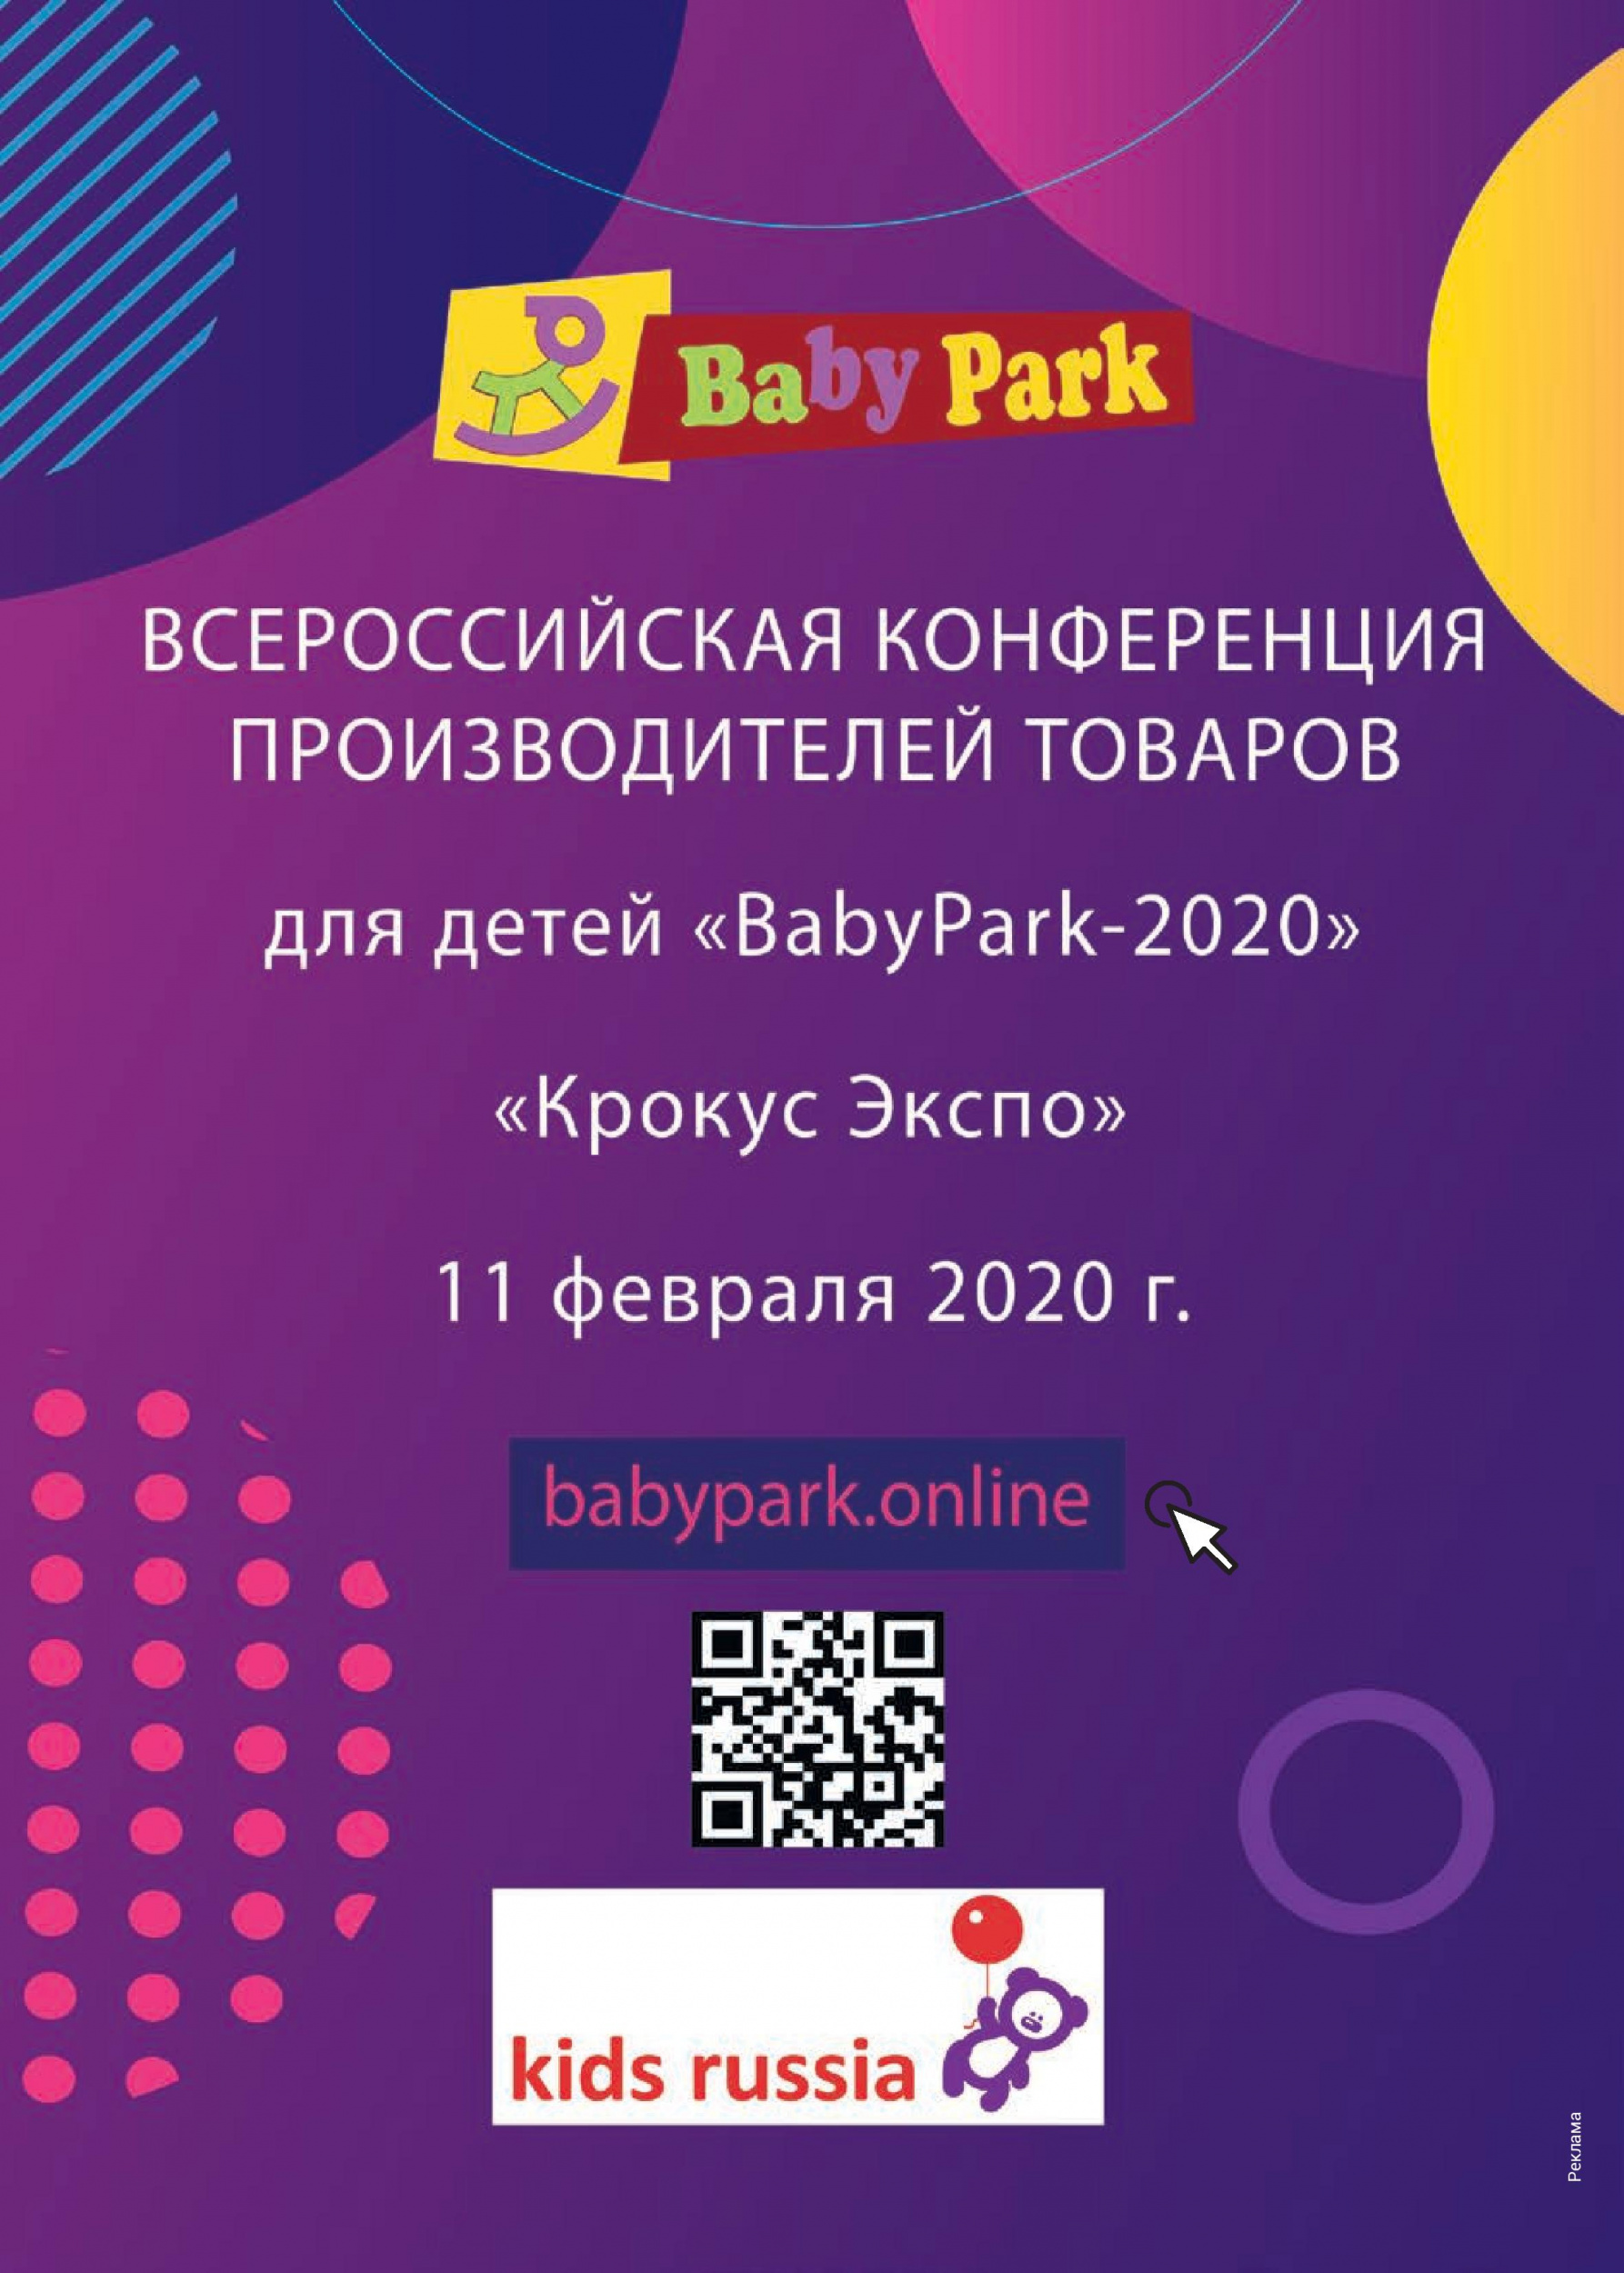 Всероссийская конференция "BabyPark-2020"